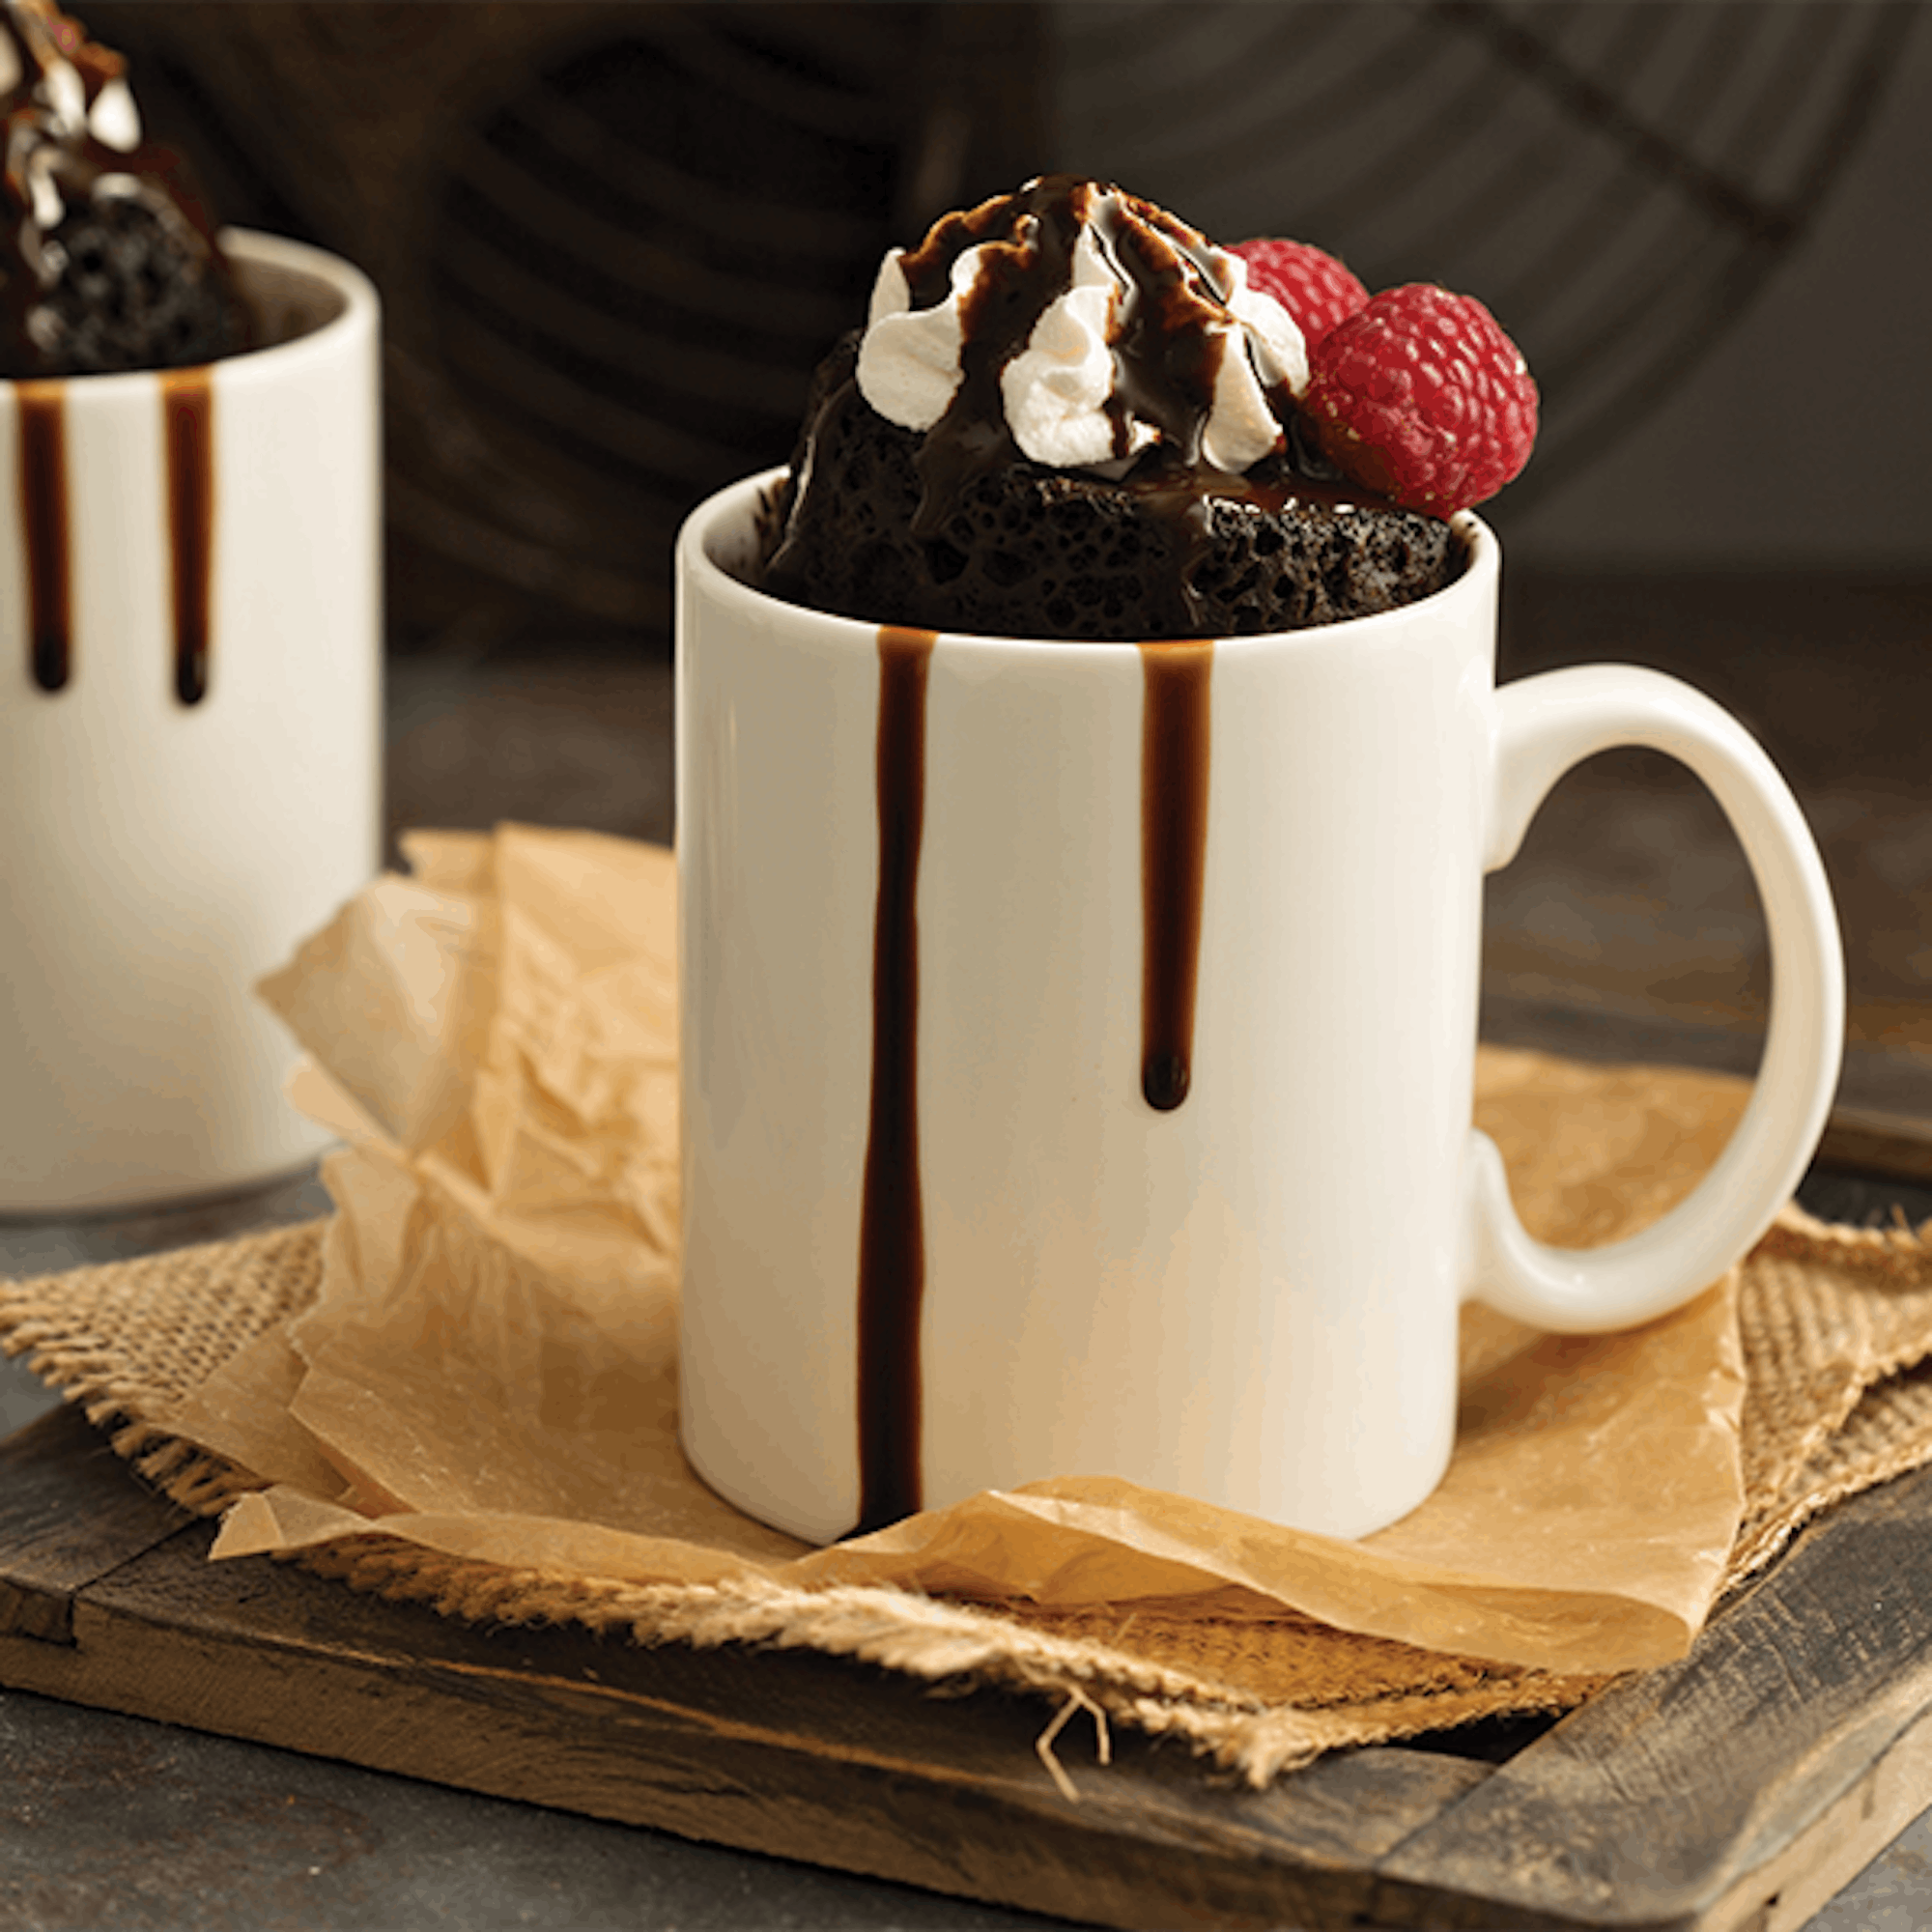 Chocolate Mug Cakes Recipe